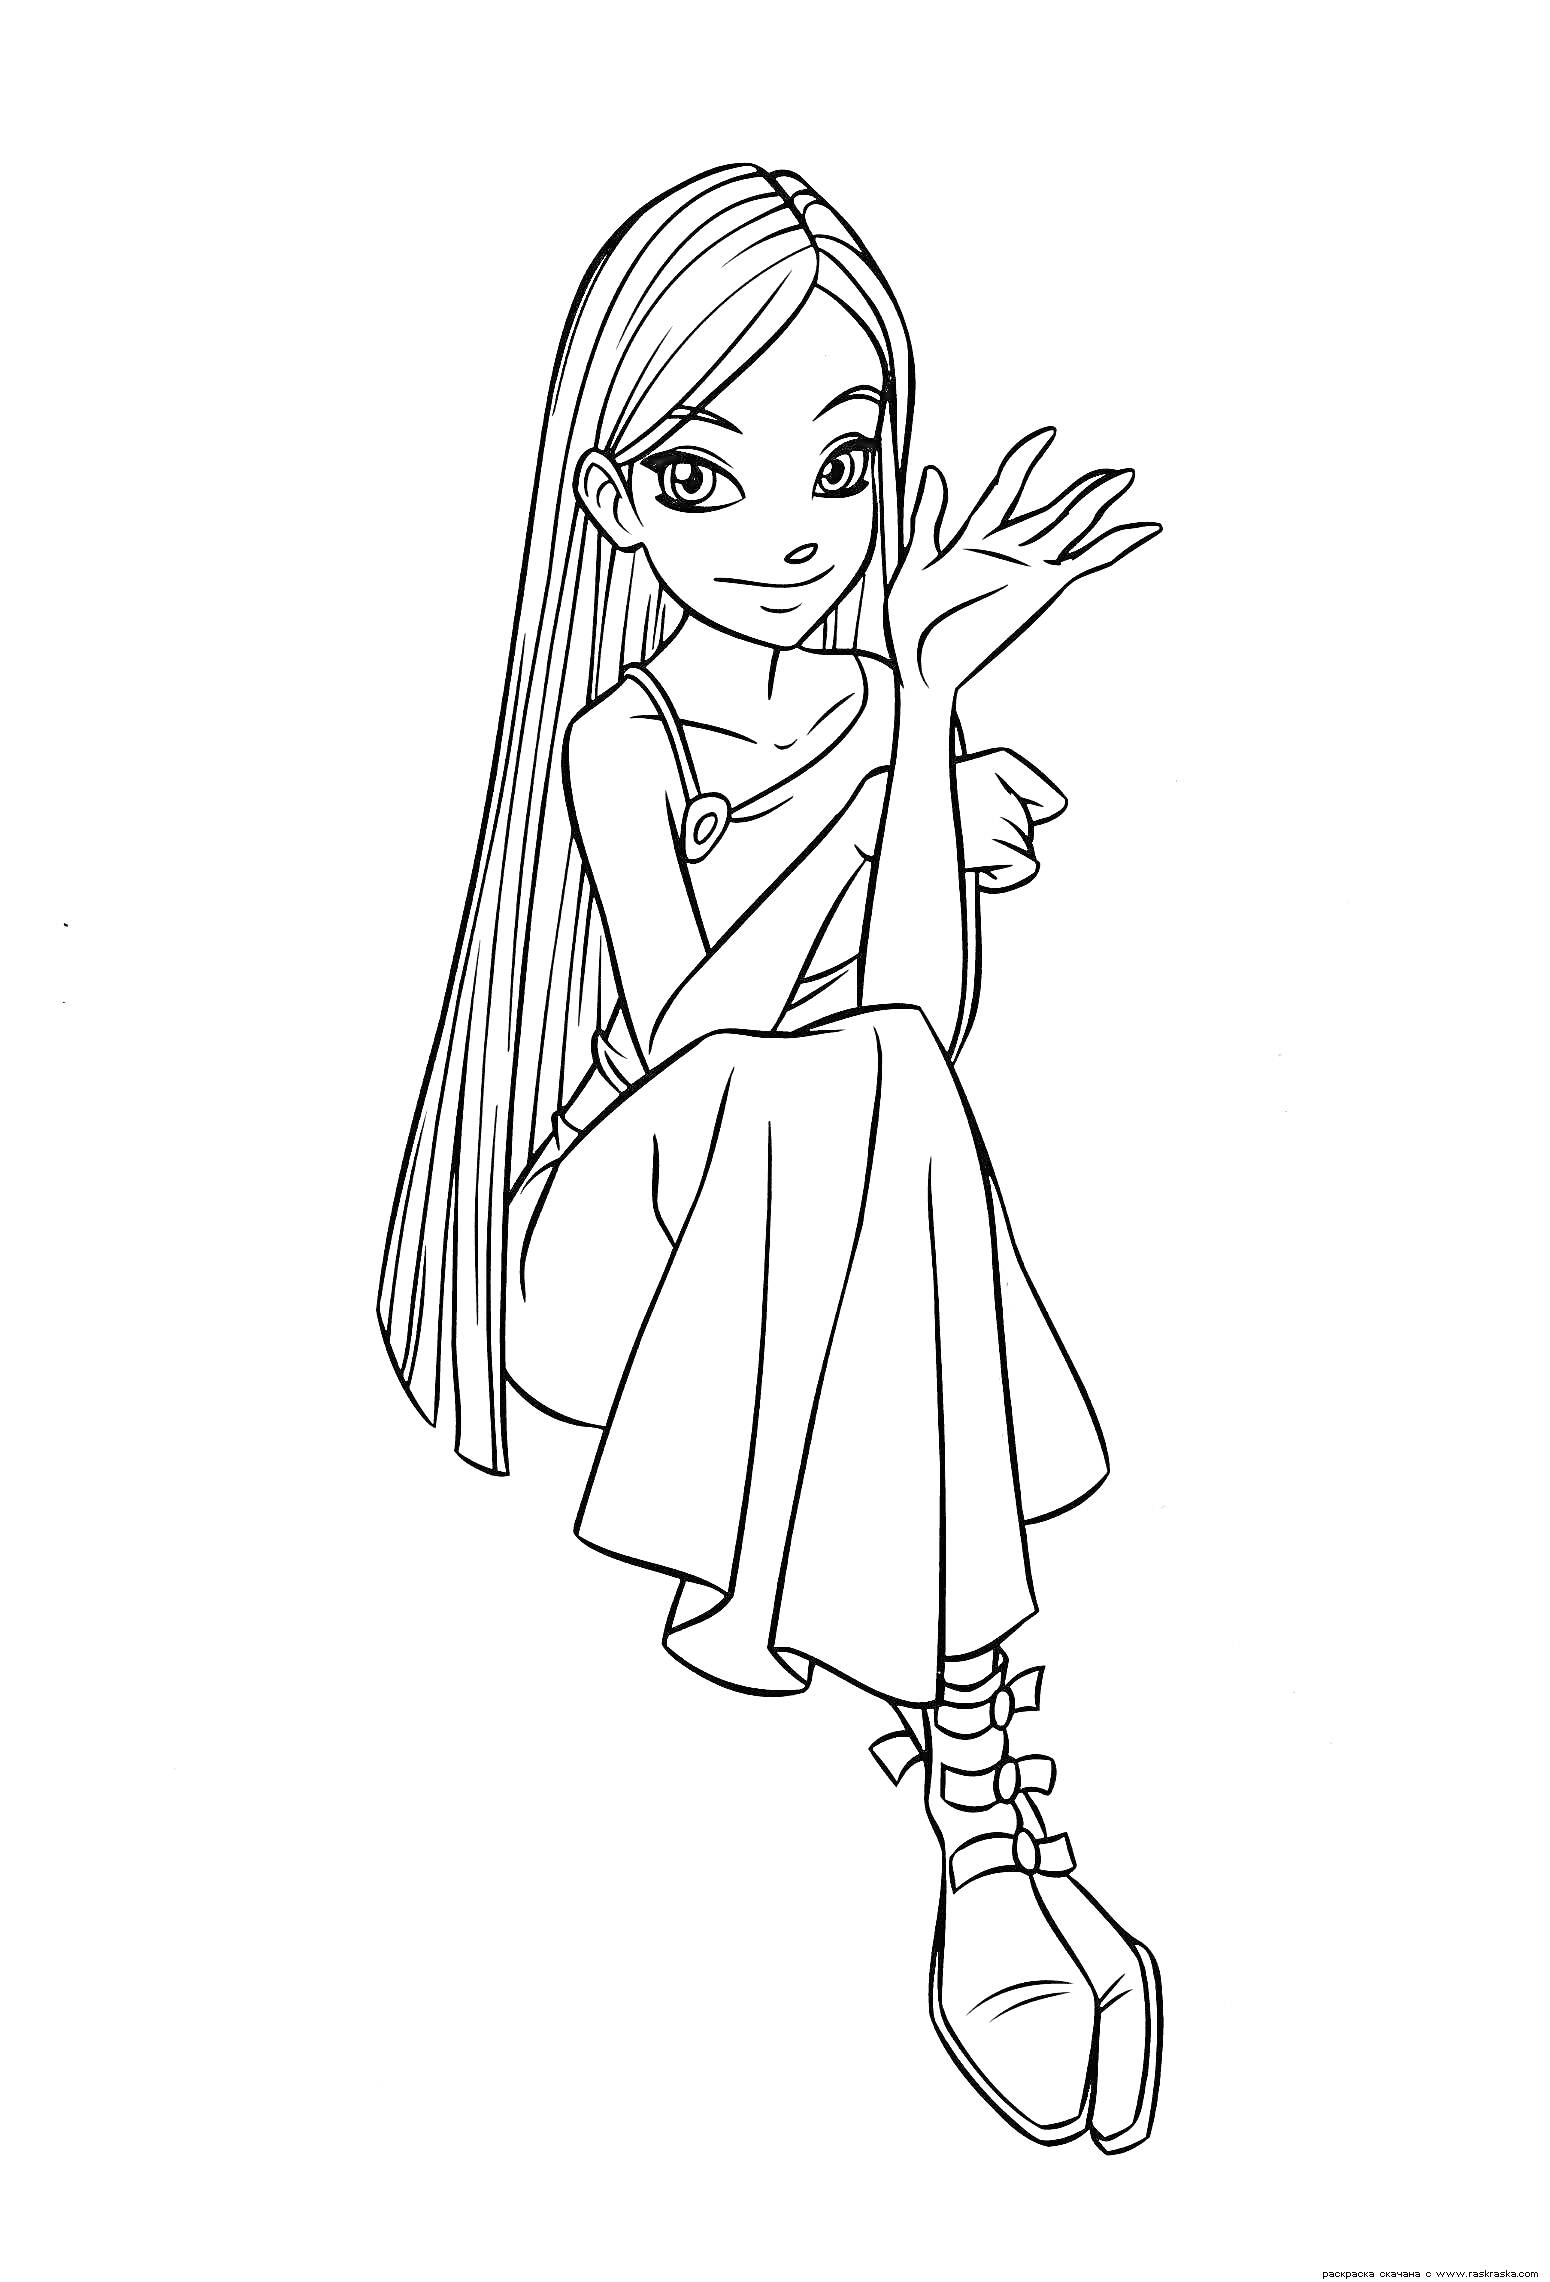 Раскраска Девушка-чародейка с длинными волосами и в длинном платье, сидящая и показывающая жестикулирующую руку